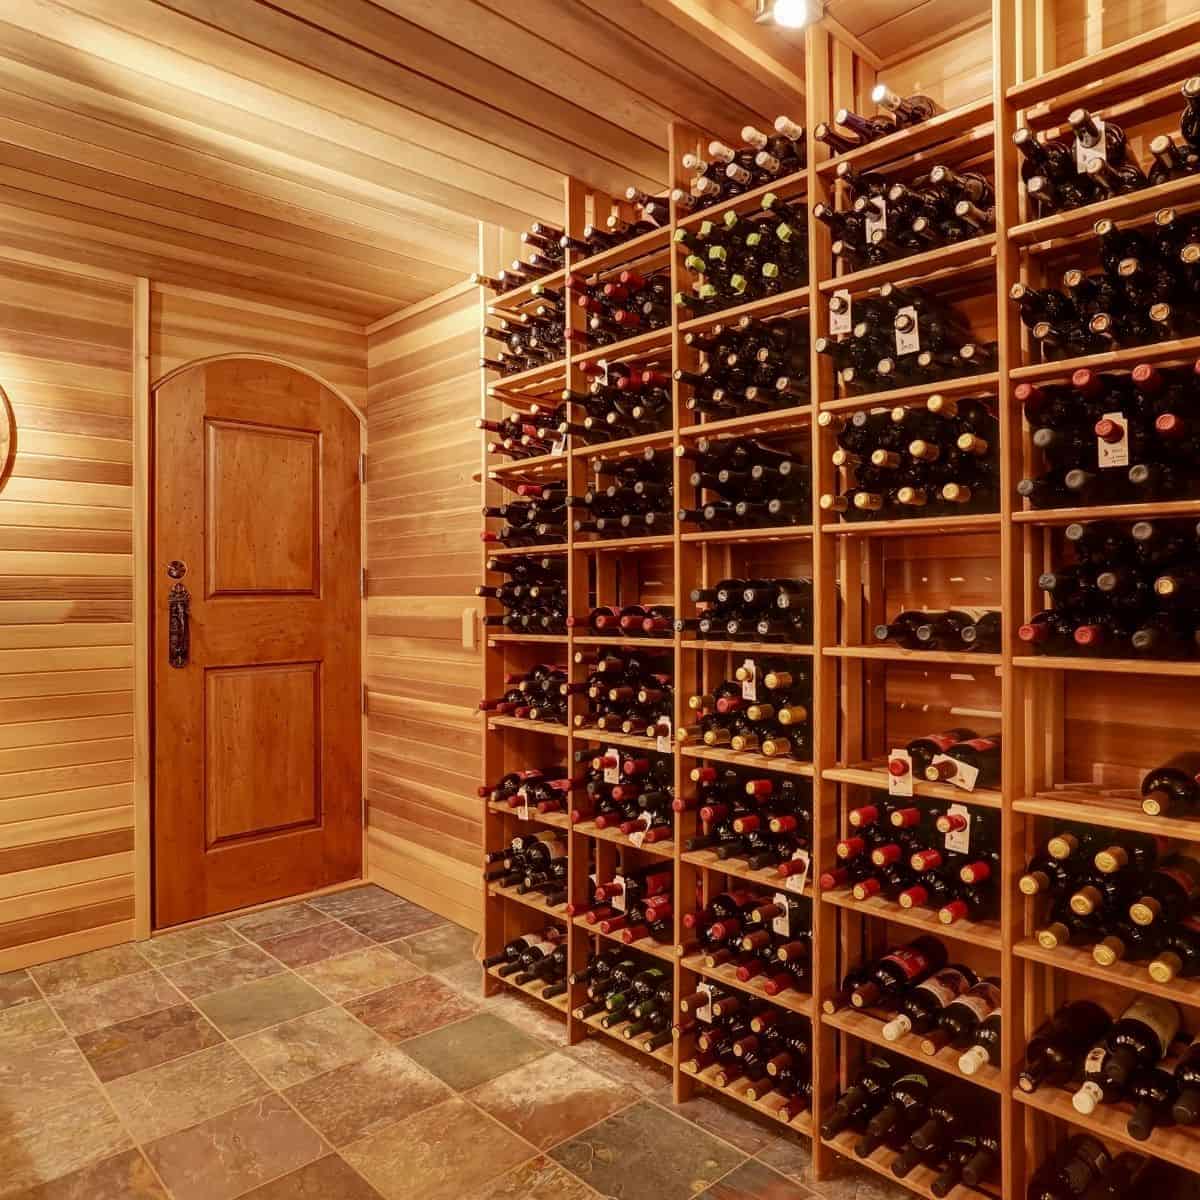 Frame on the wall for storing wine bottles